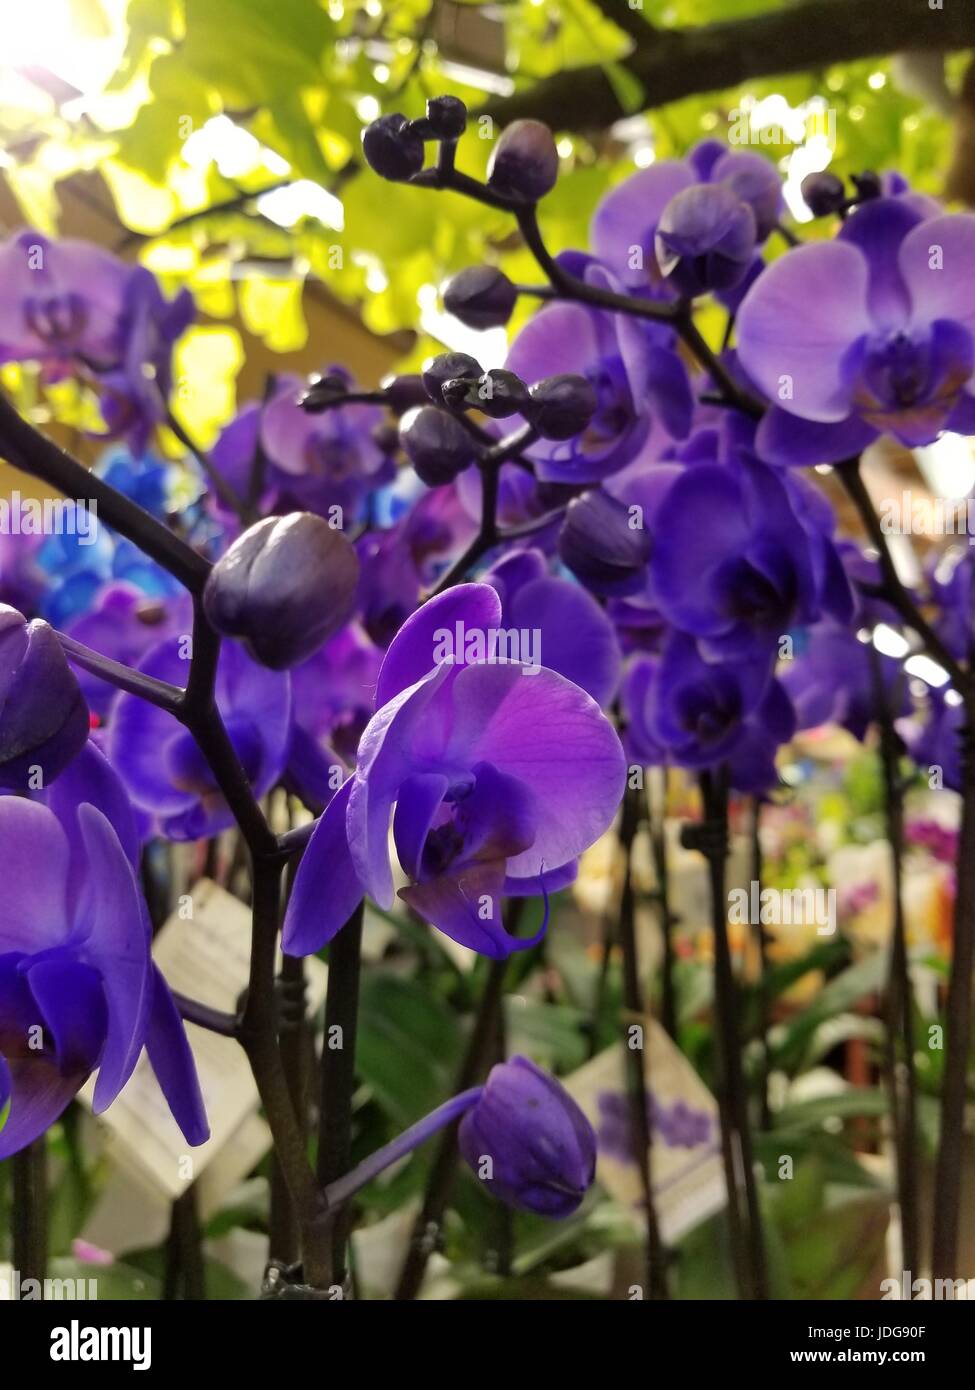 Foto von schönen unbeschnittenen lila Orchideen in einer natürlichen Umgebung, bringen die Vielfalt der Magenta Farben, die die Klammer dieser Blume geworden sind. Stockfoto